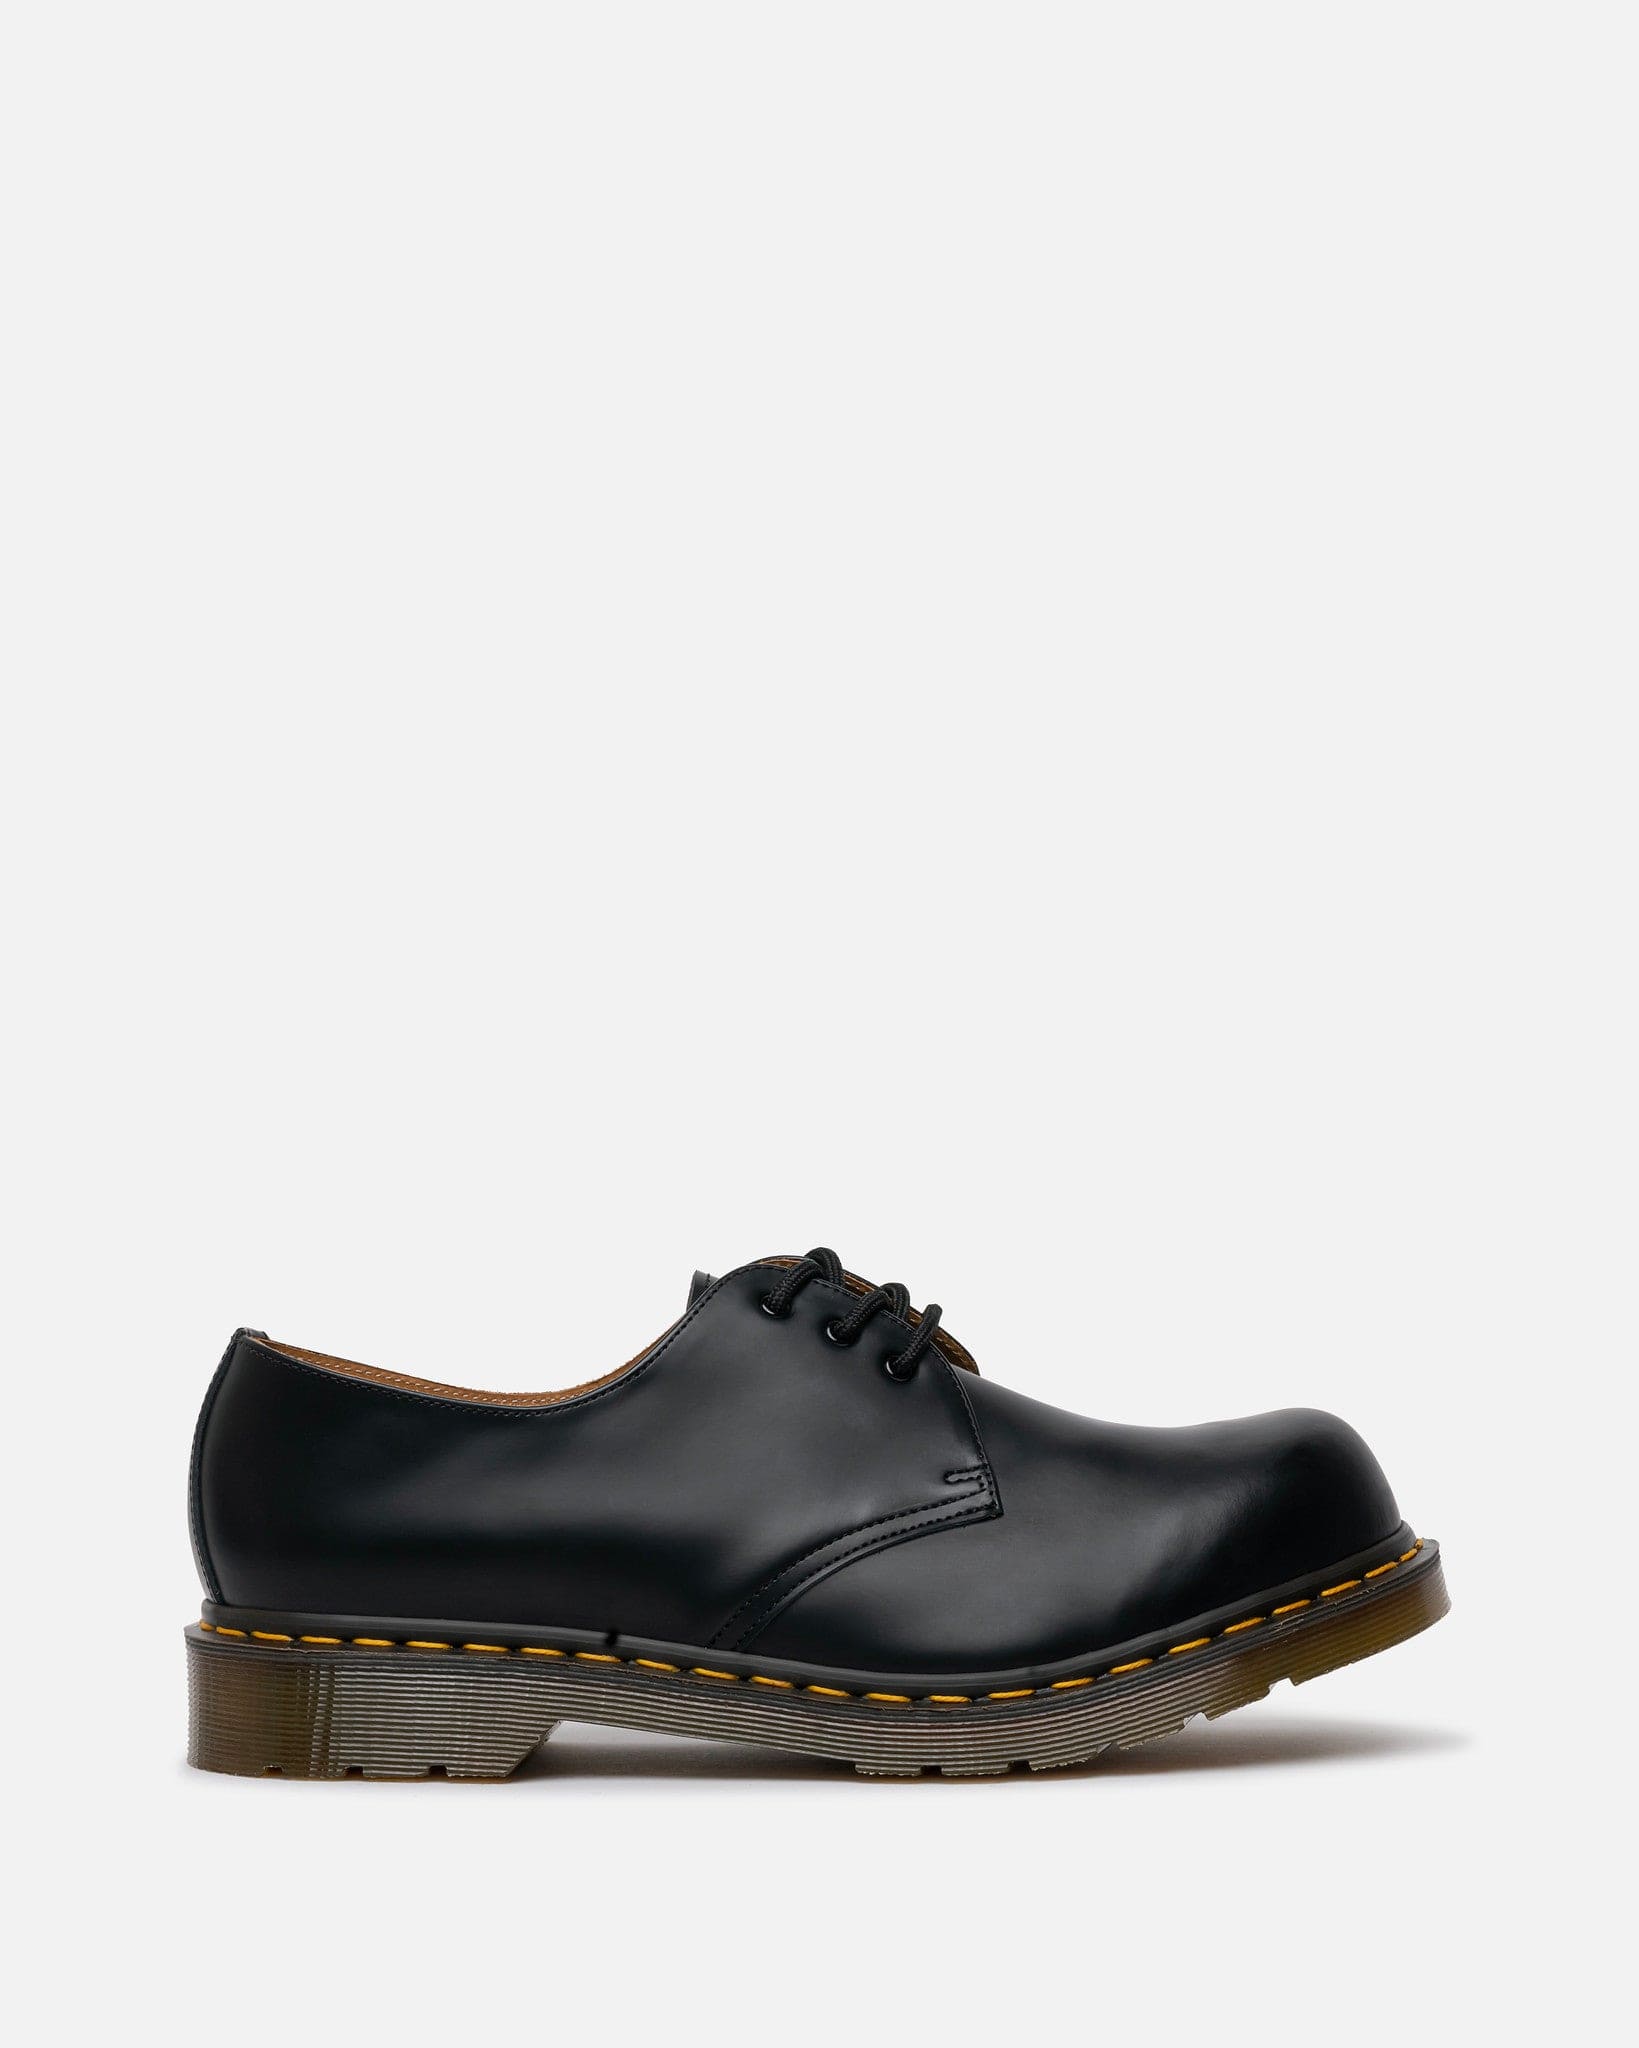 Comme des Garcons Homme Deux Men's Shoes Dr. Martens 1460 Leather Round Toe in Black